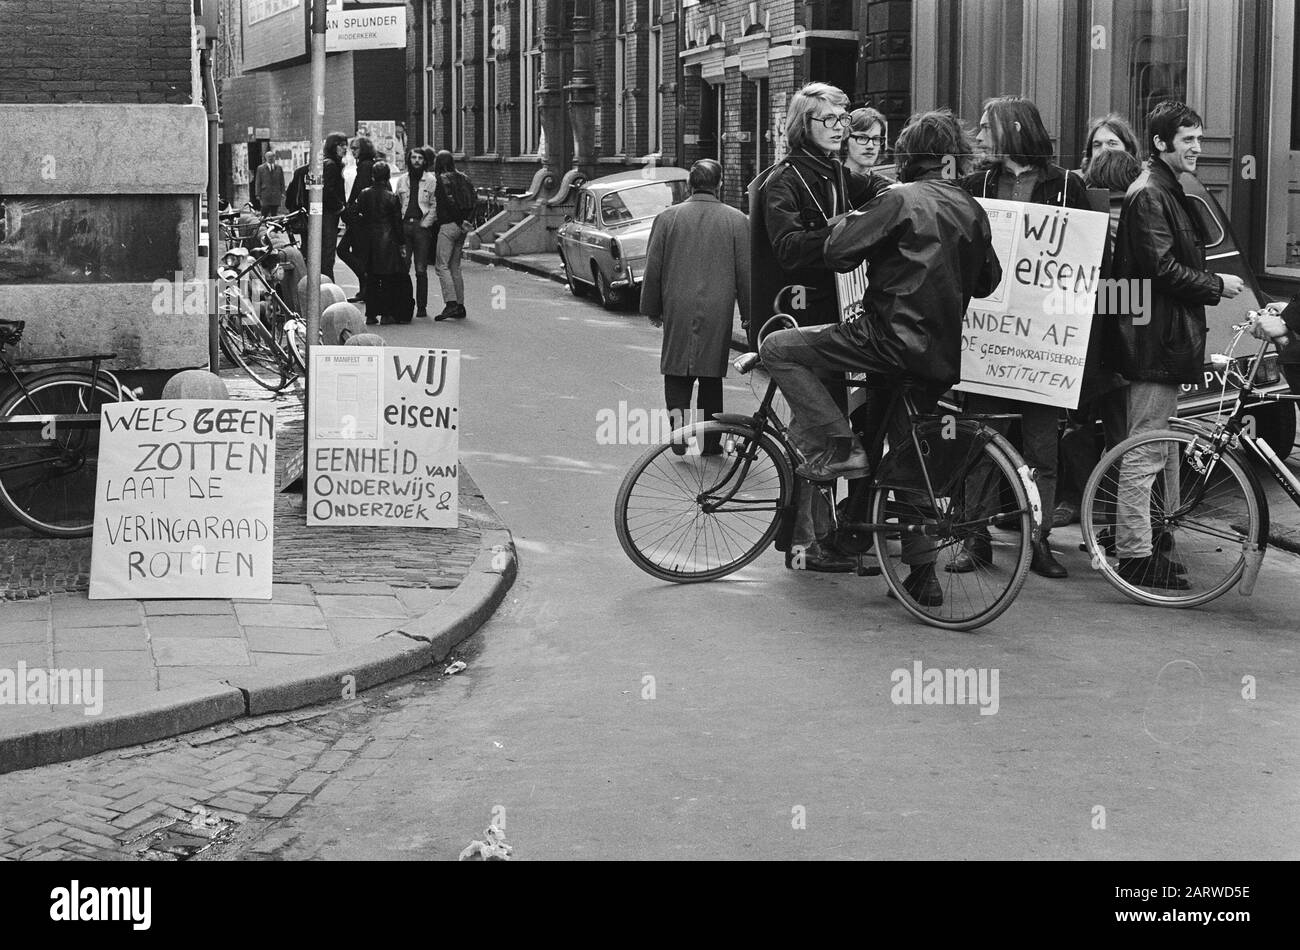 Manifestación de estudiantes en la Casa de Magdeburg en Amsterdam contra la 'ley estudiantes con signos Fecha: 26 abril 1971 lugar: Amsterdam, Noord-Holland palabras clave: Demostraciones, manifestantes, banderas, estudiantes Foto de stock